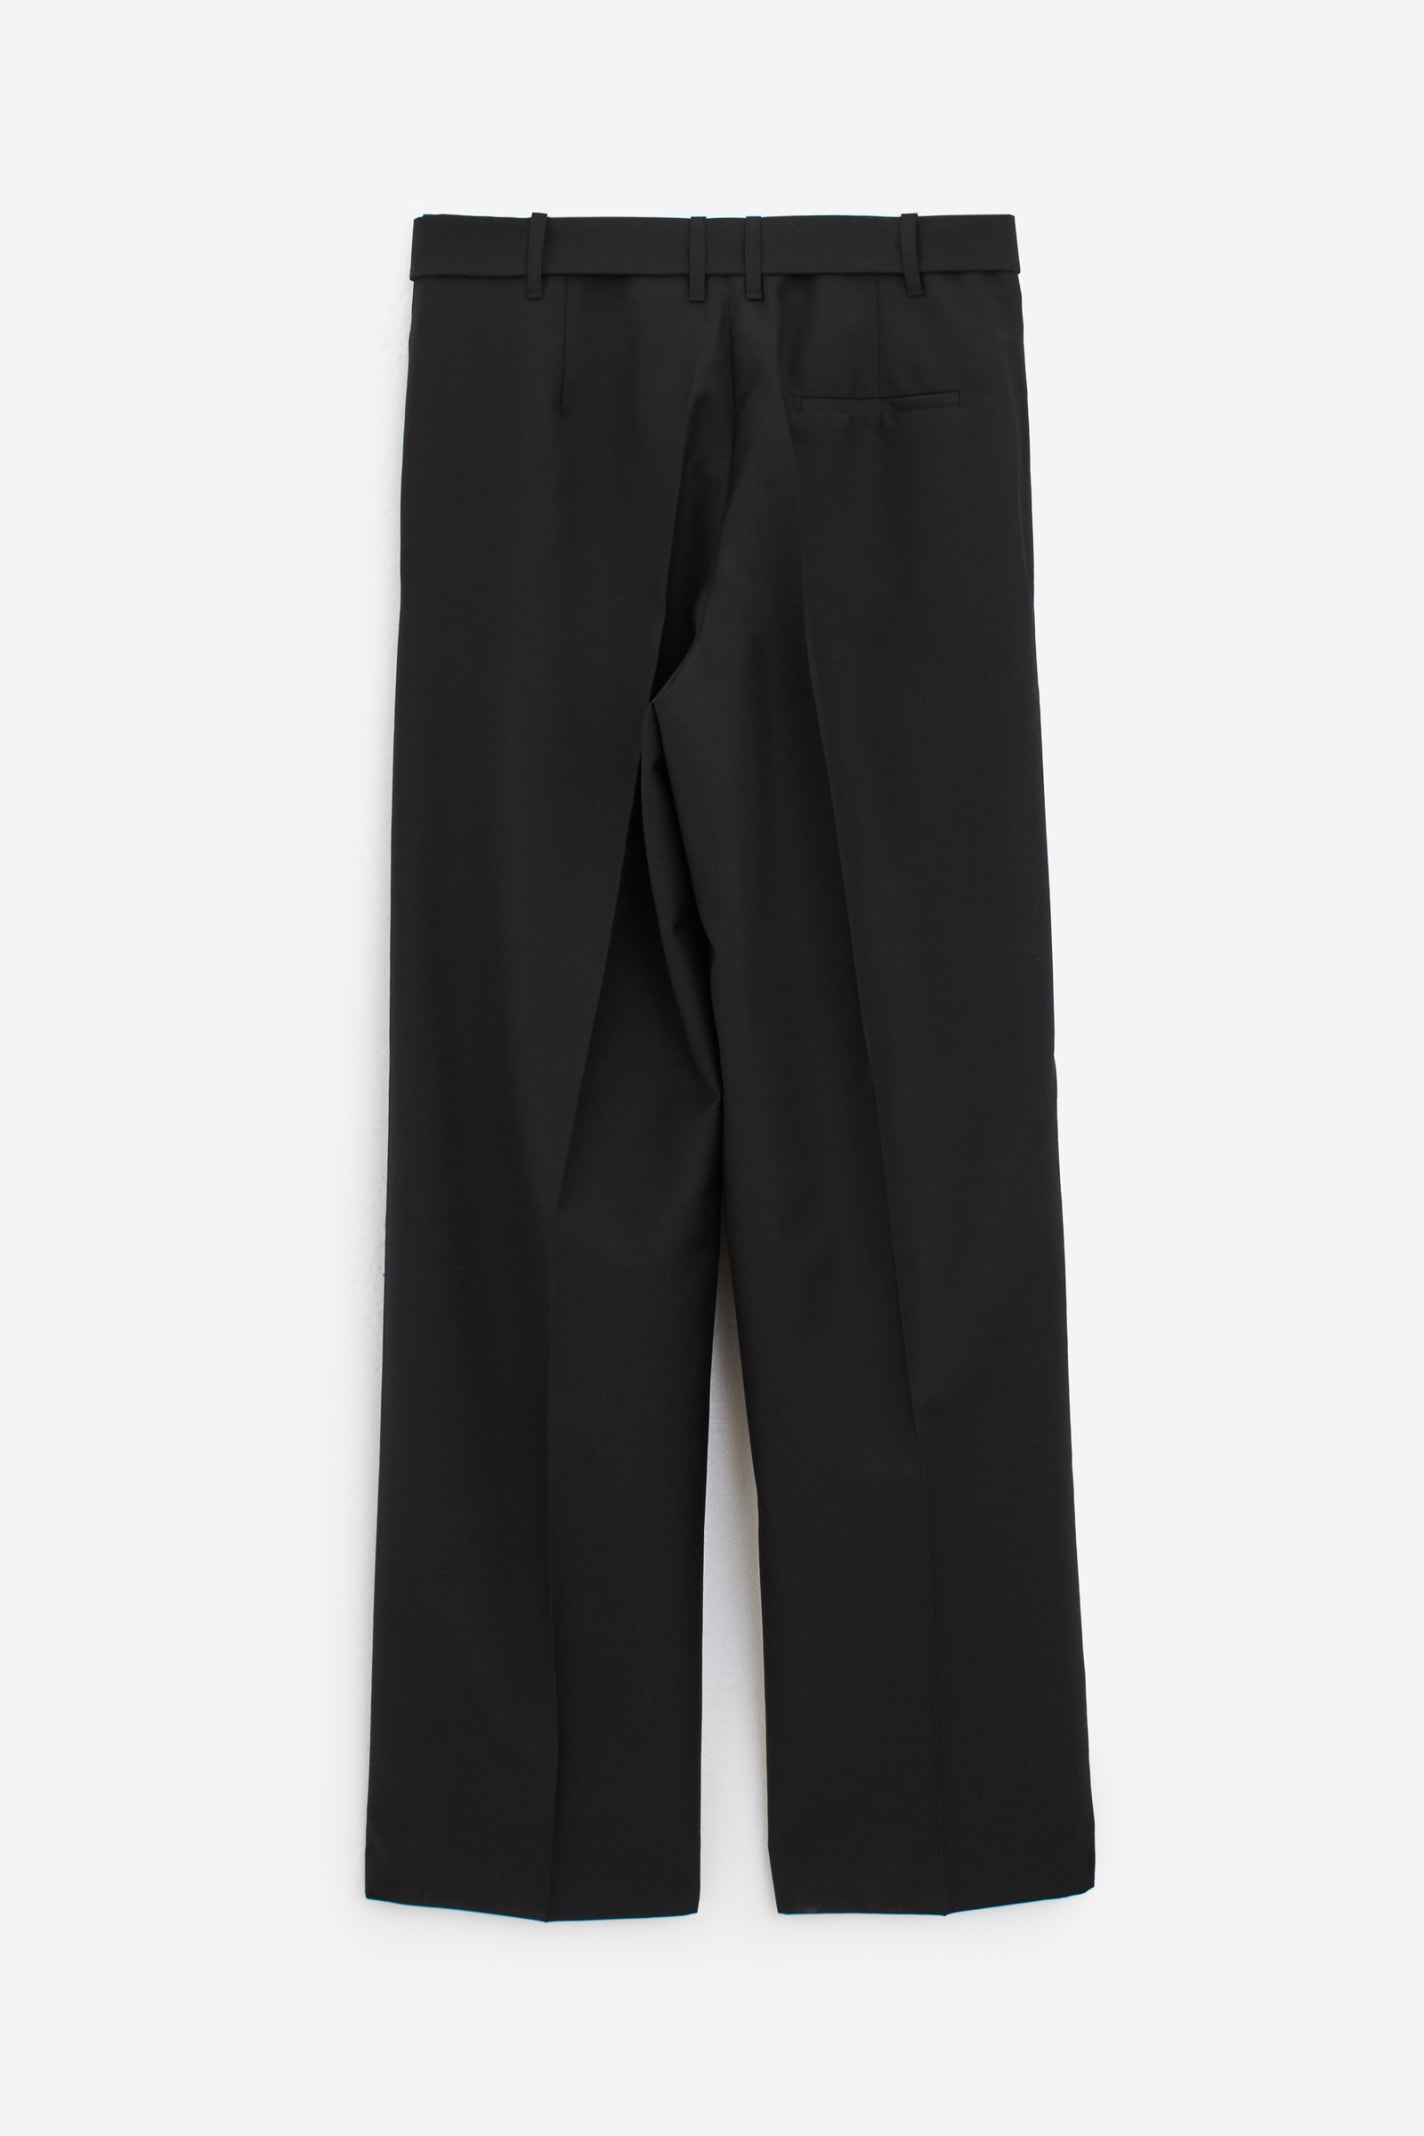 Shop Etudes Studio Cooper Pants In Black